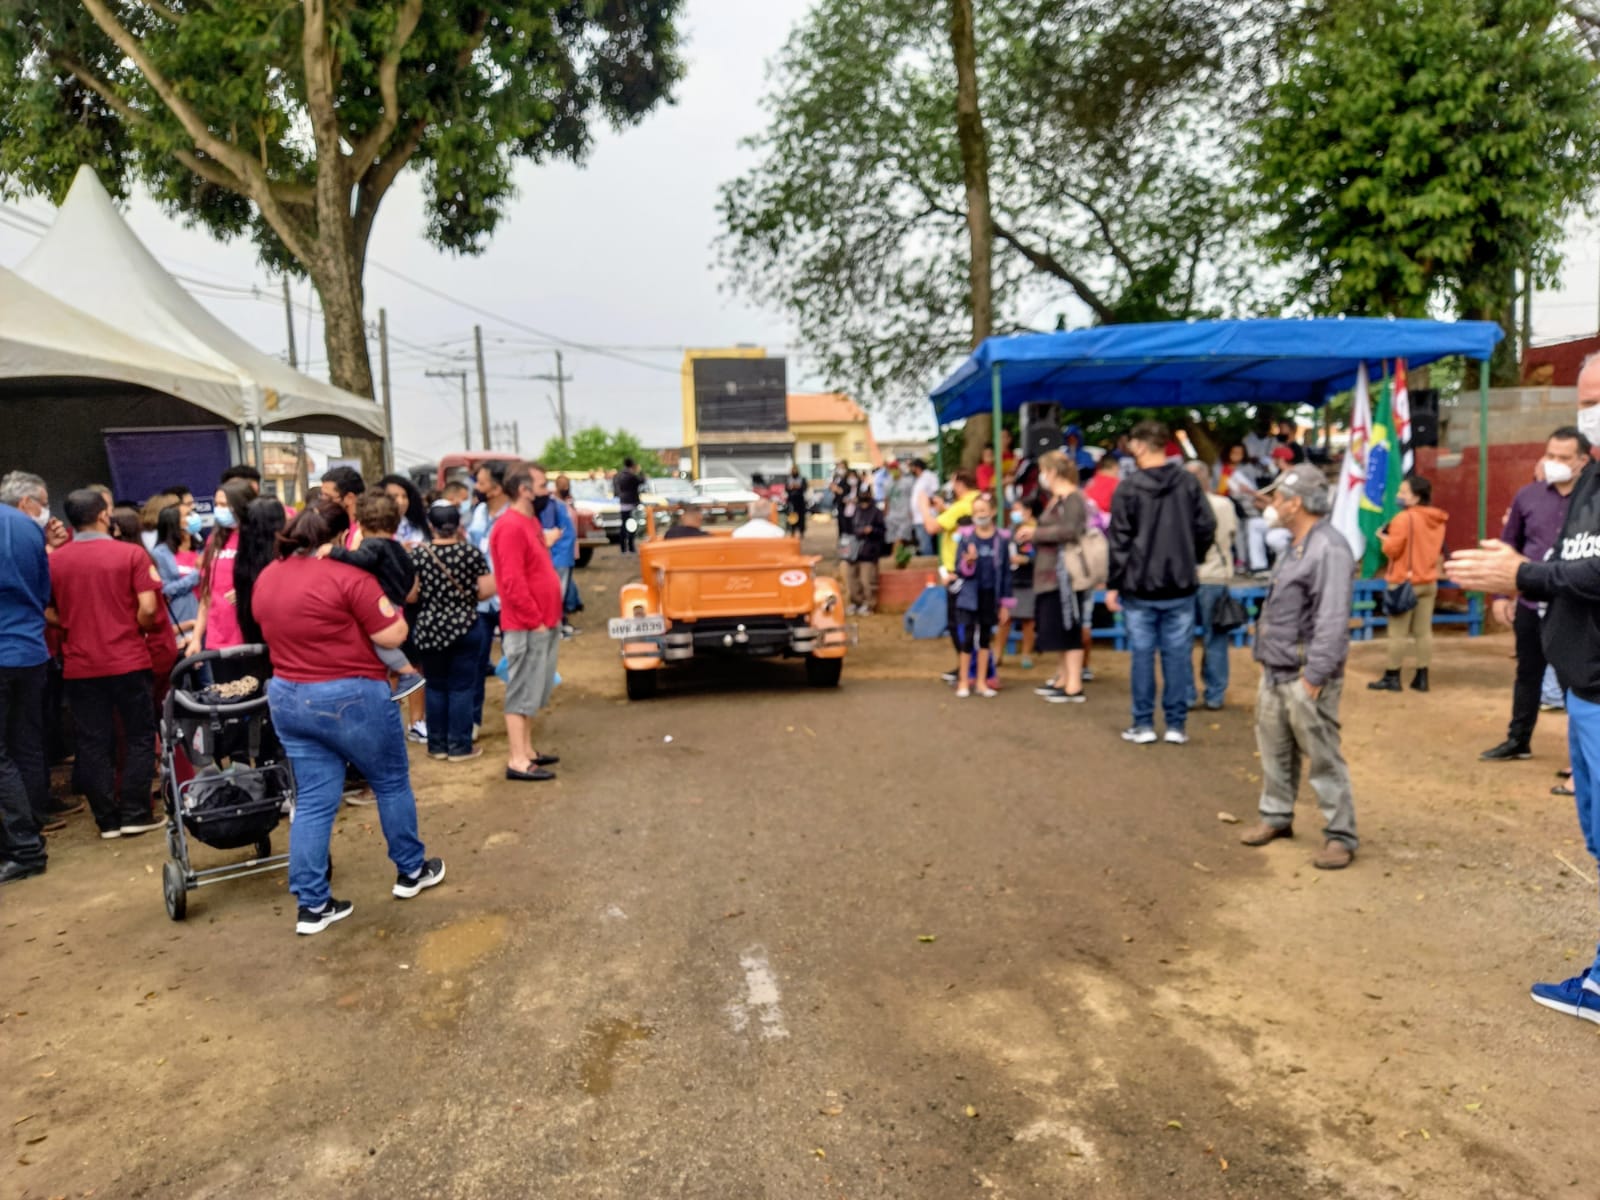 Pessoas enfileiradas à direita e à esquerda, admiram a passagem de uma pequena caminhonete antiga, pintada de laranja.